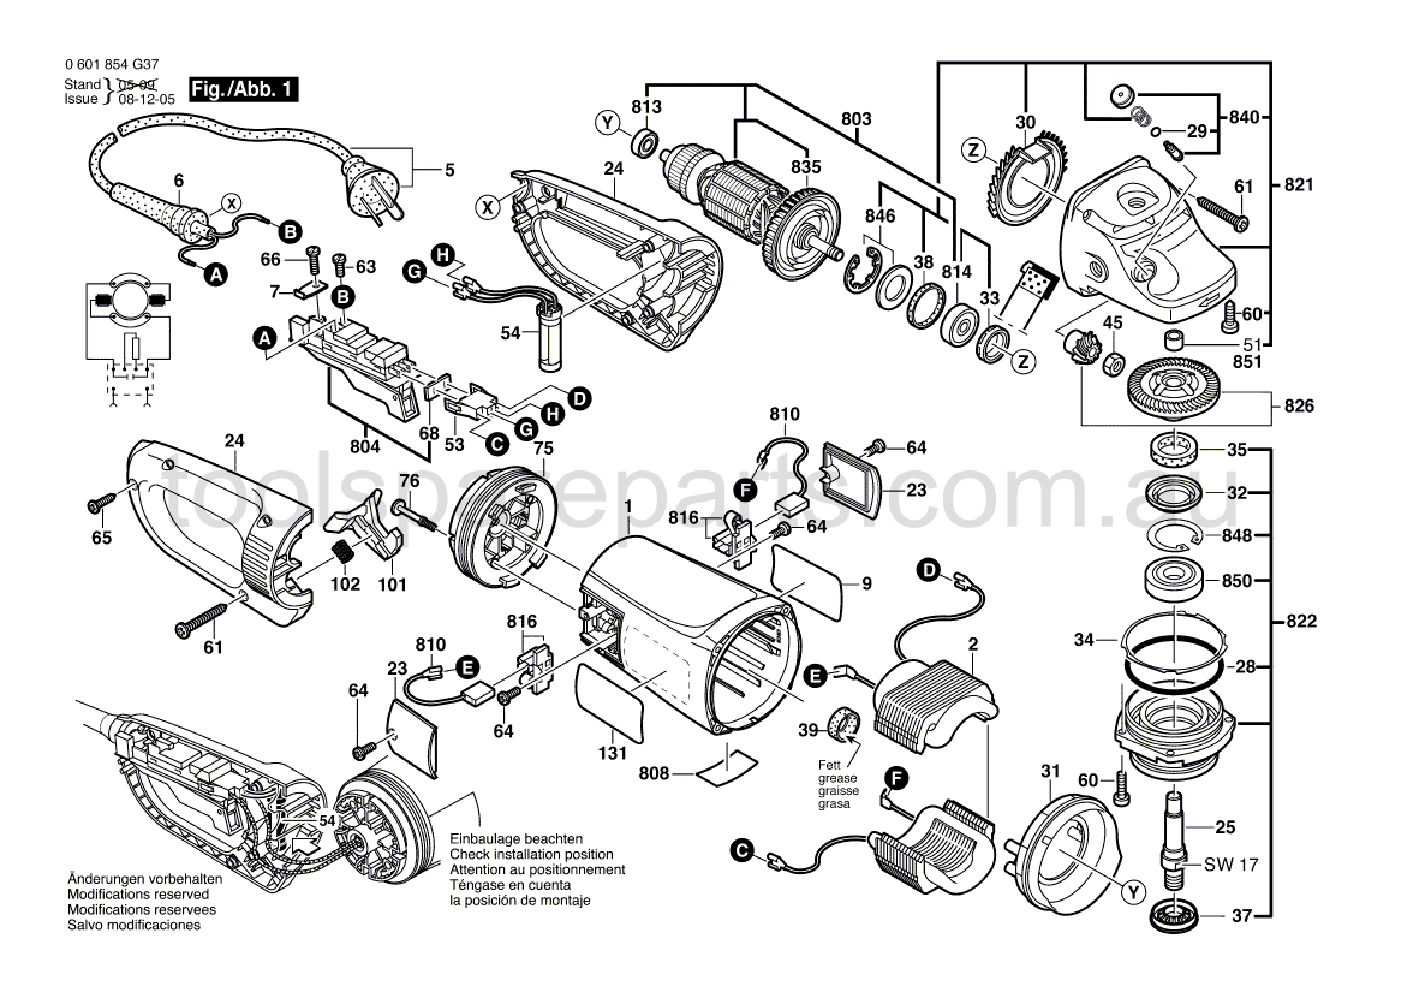 Bosch GWS 24-230 JBV 0601854G37  Diagram 1